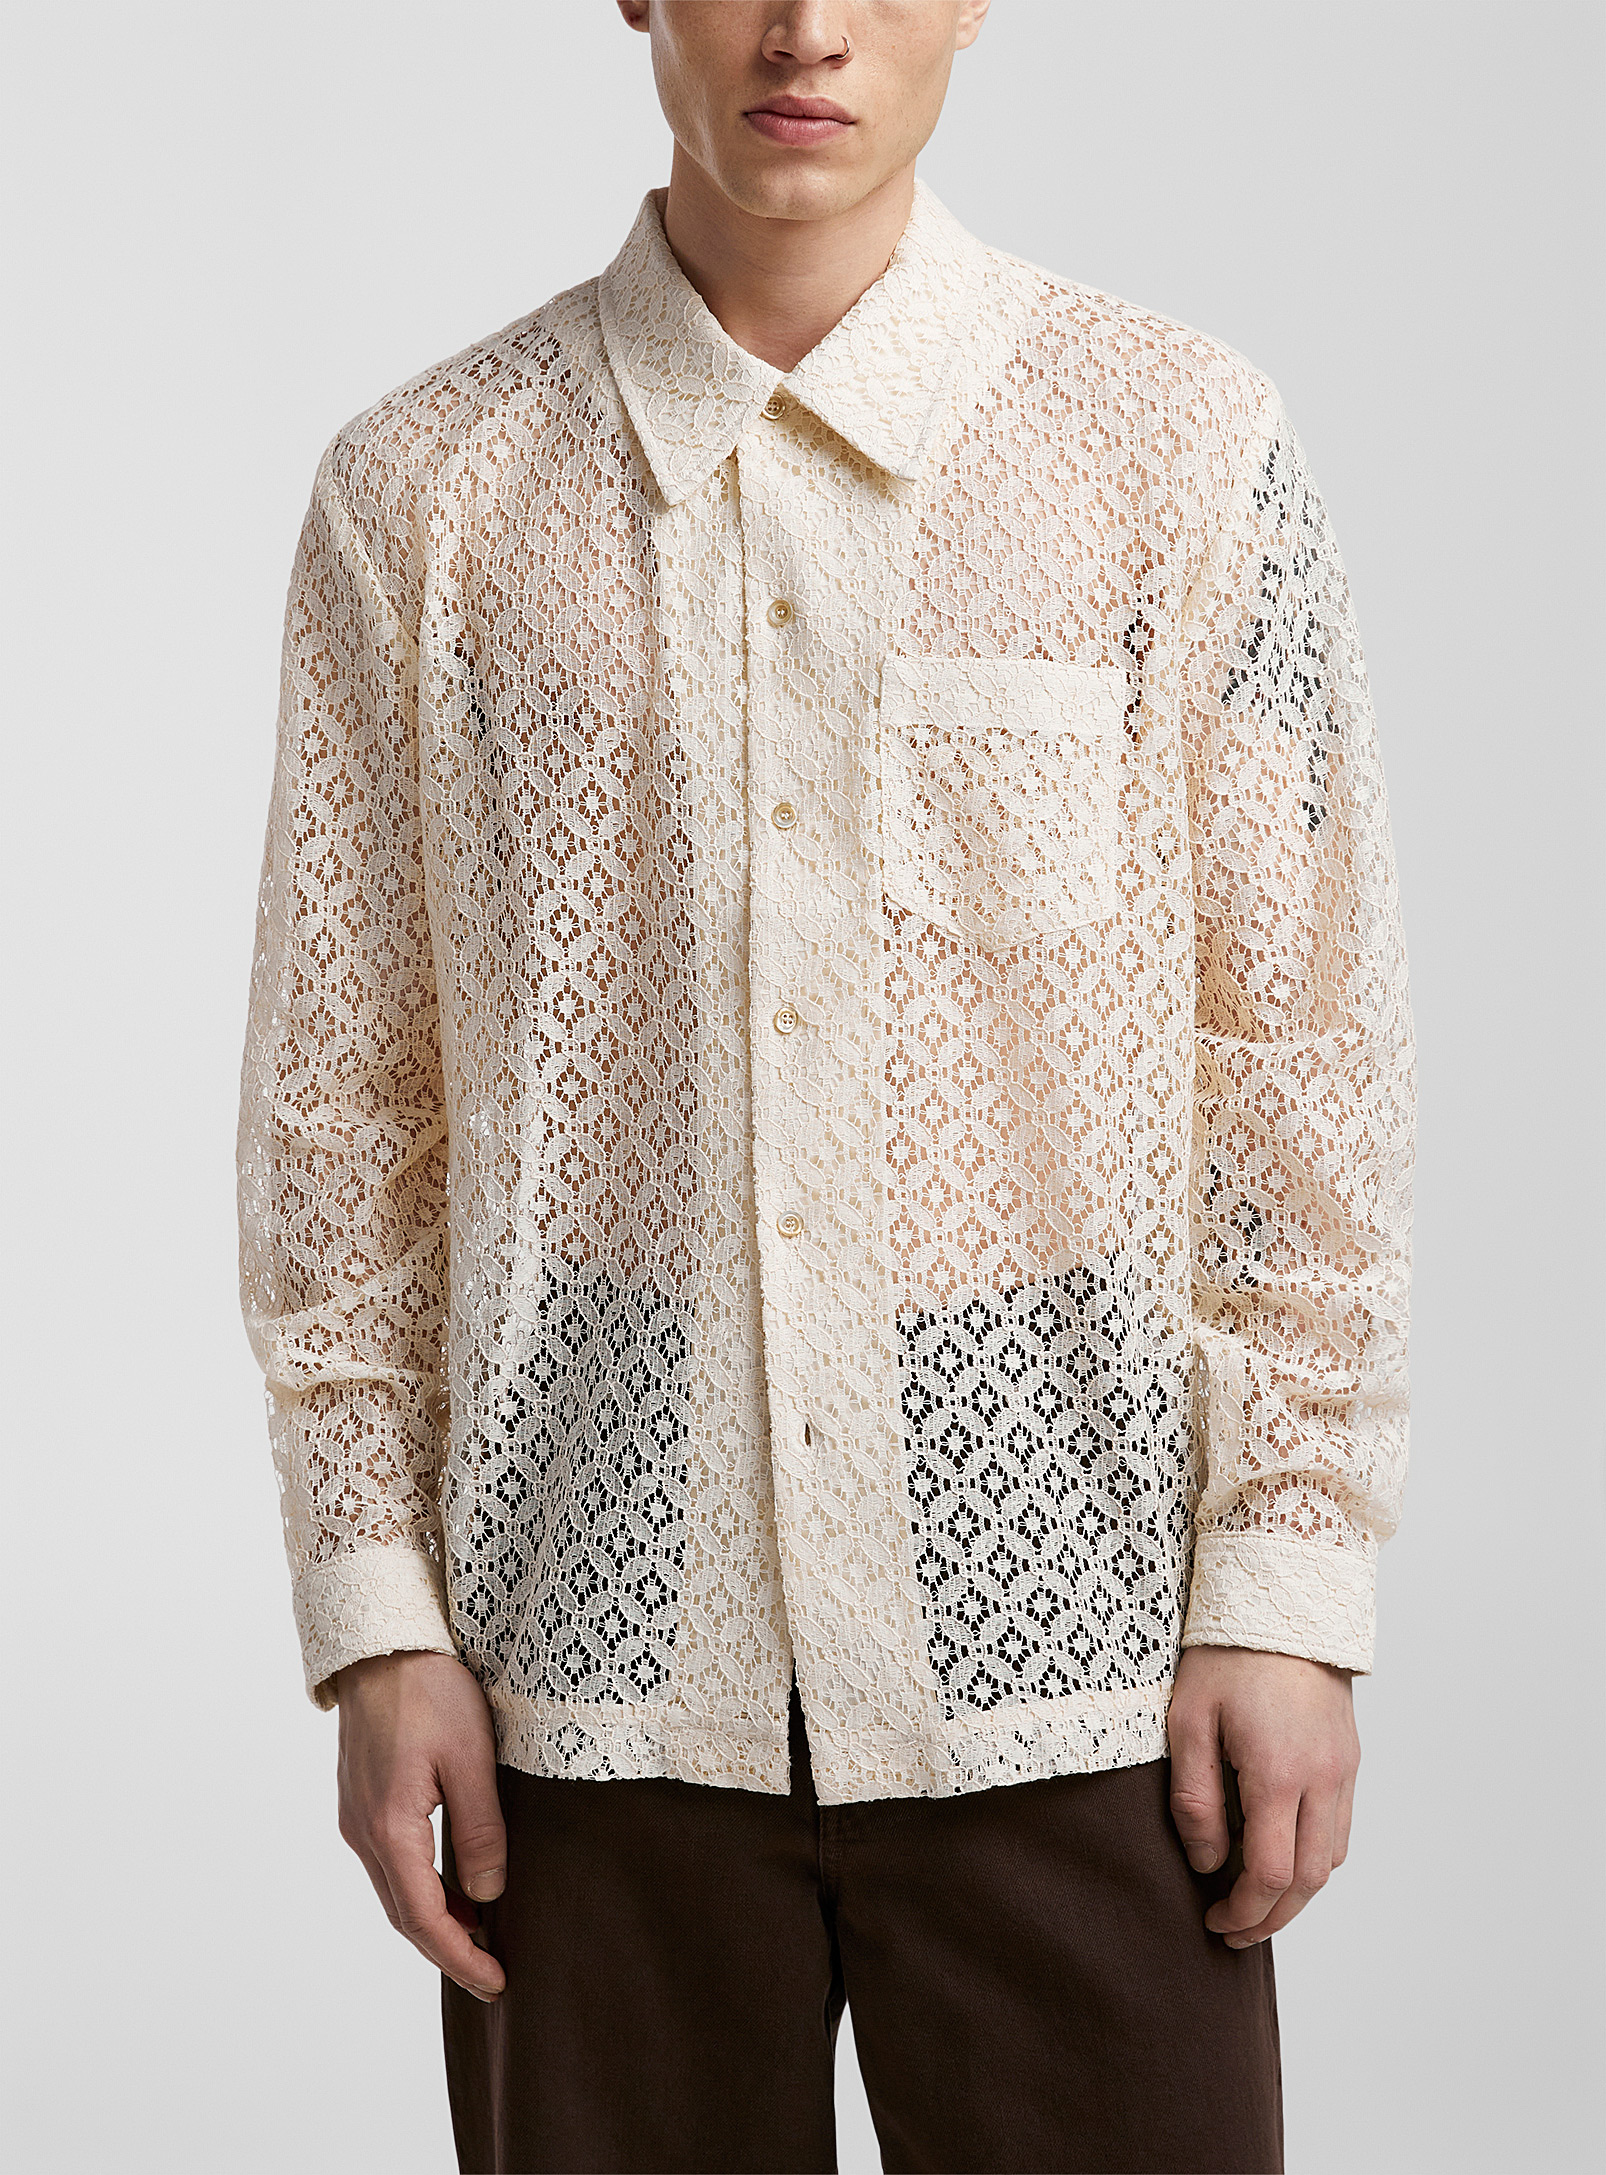 Séfr - Men's Jagou floral lace shirt